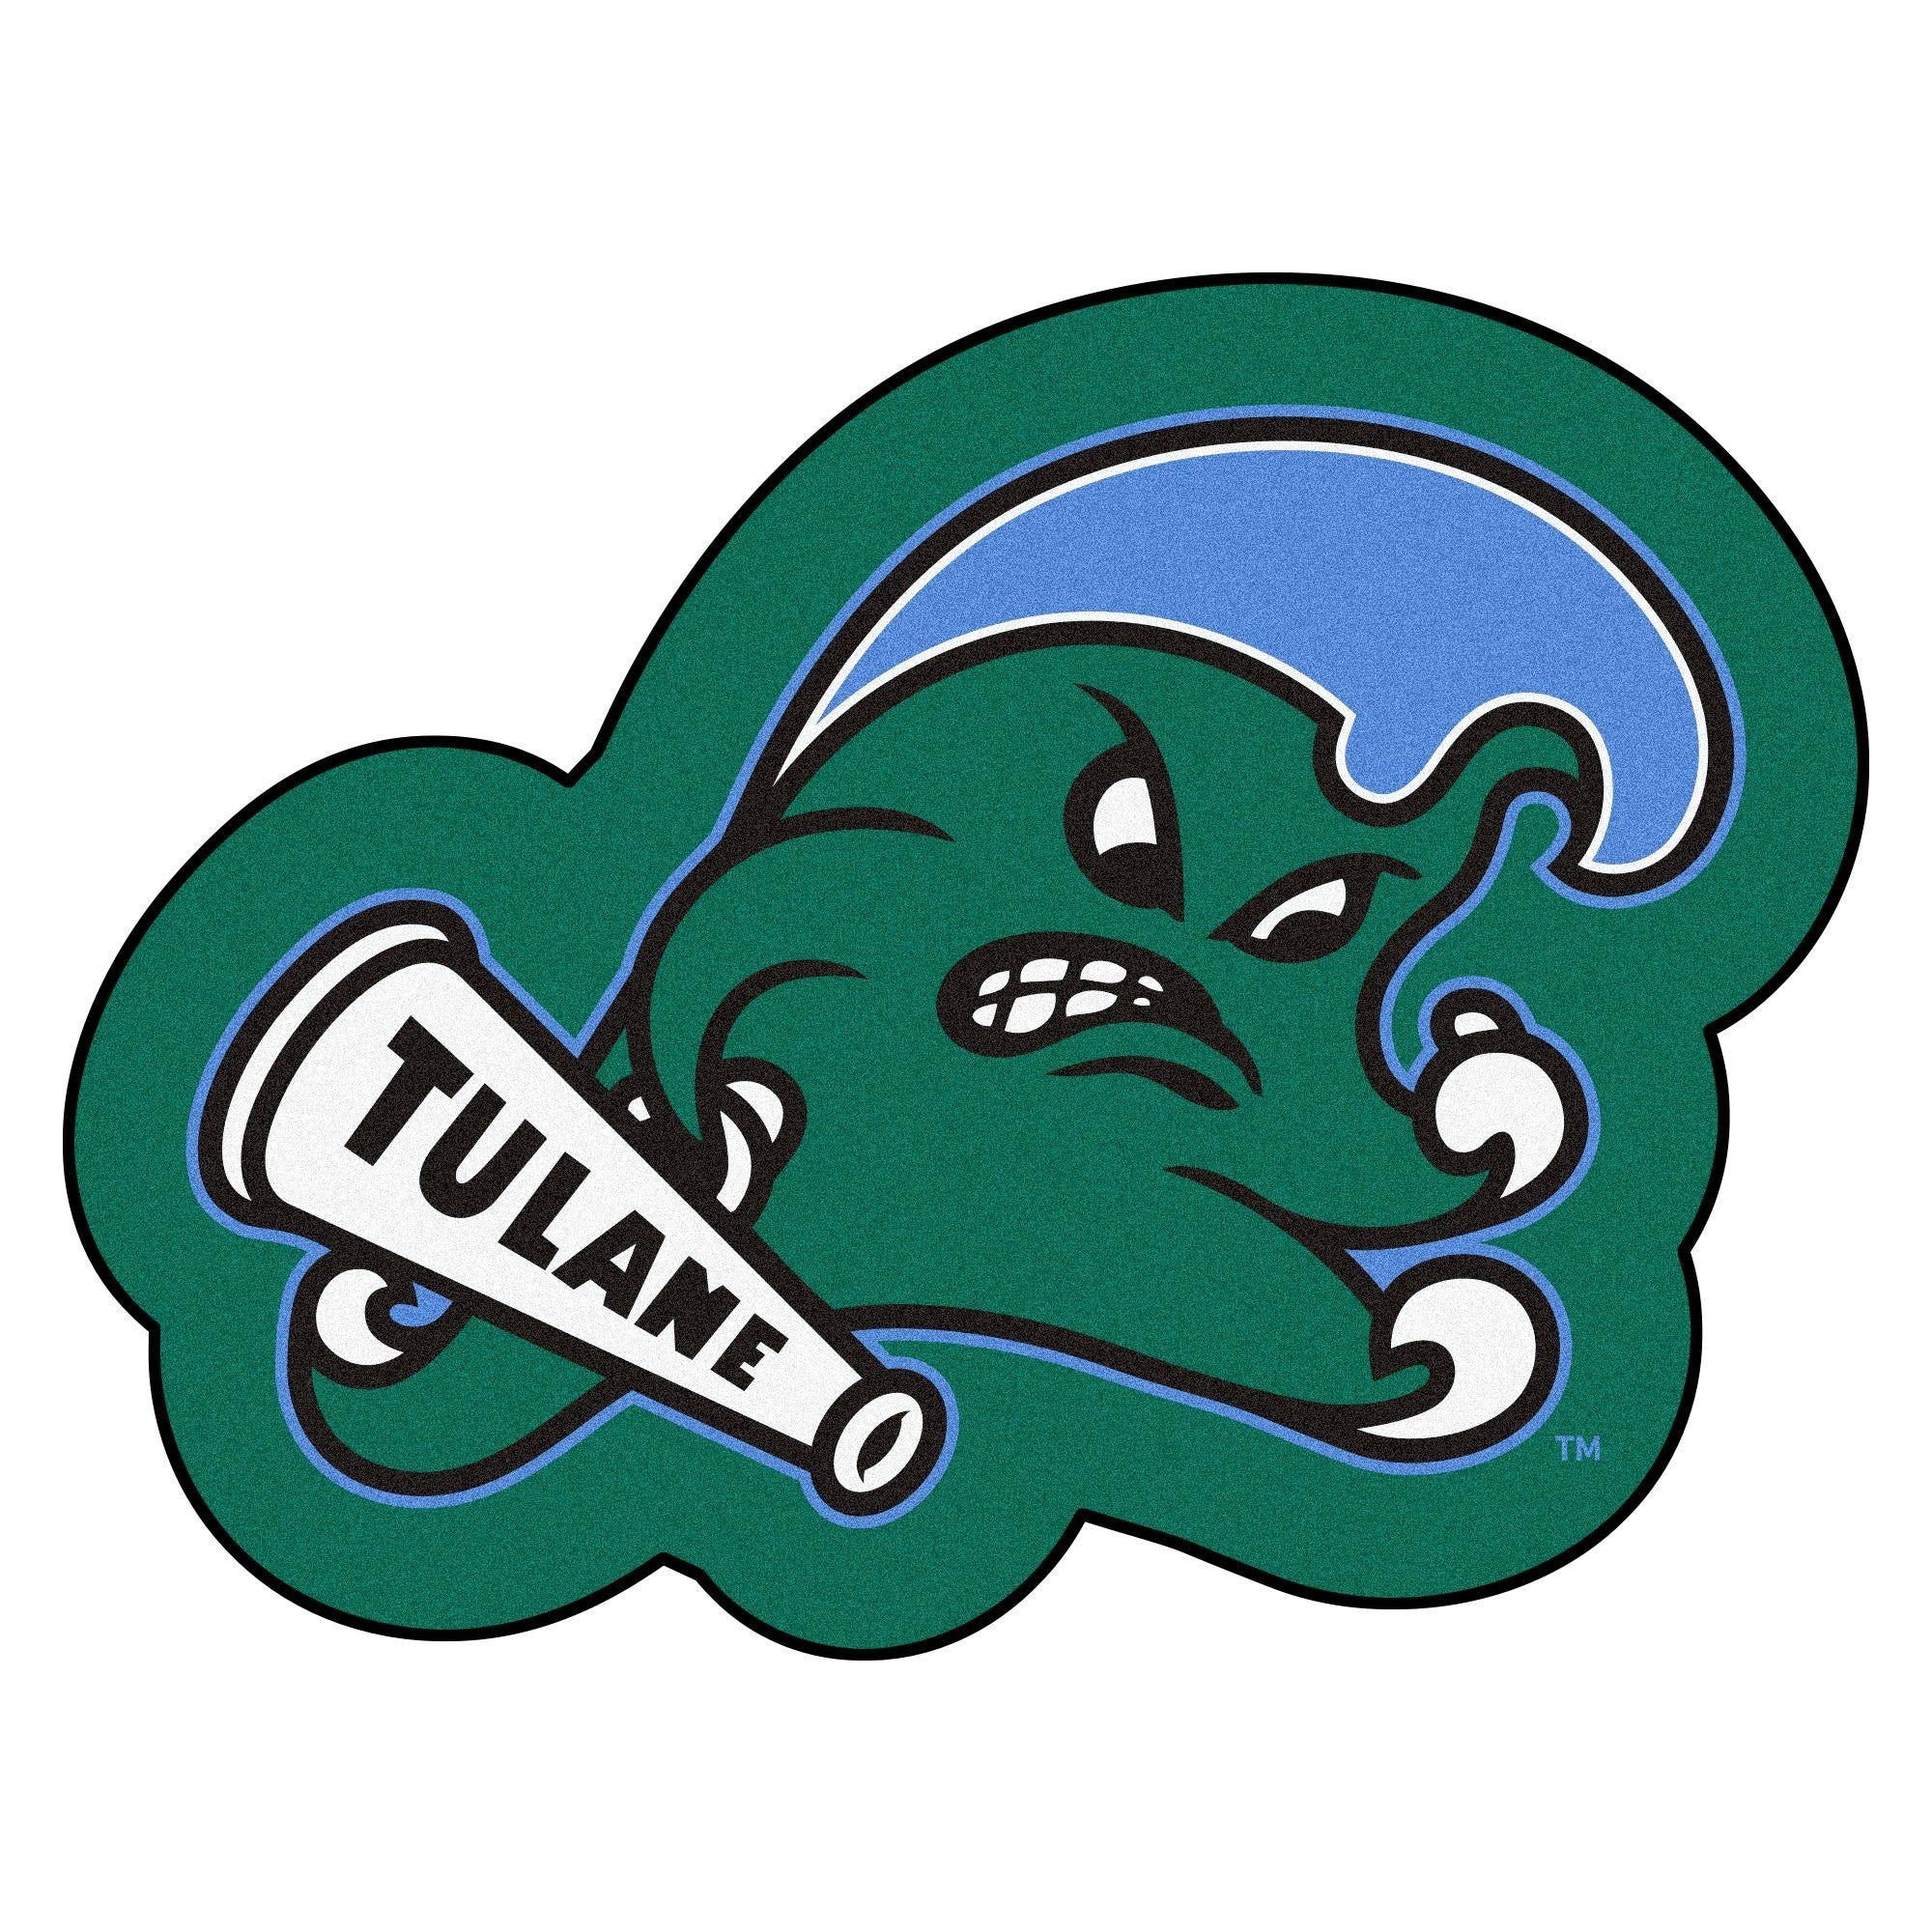 Tulane Logo - NCAA Tulane University Green Wave Mascot Novelty Logo Shaped Area Rug